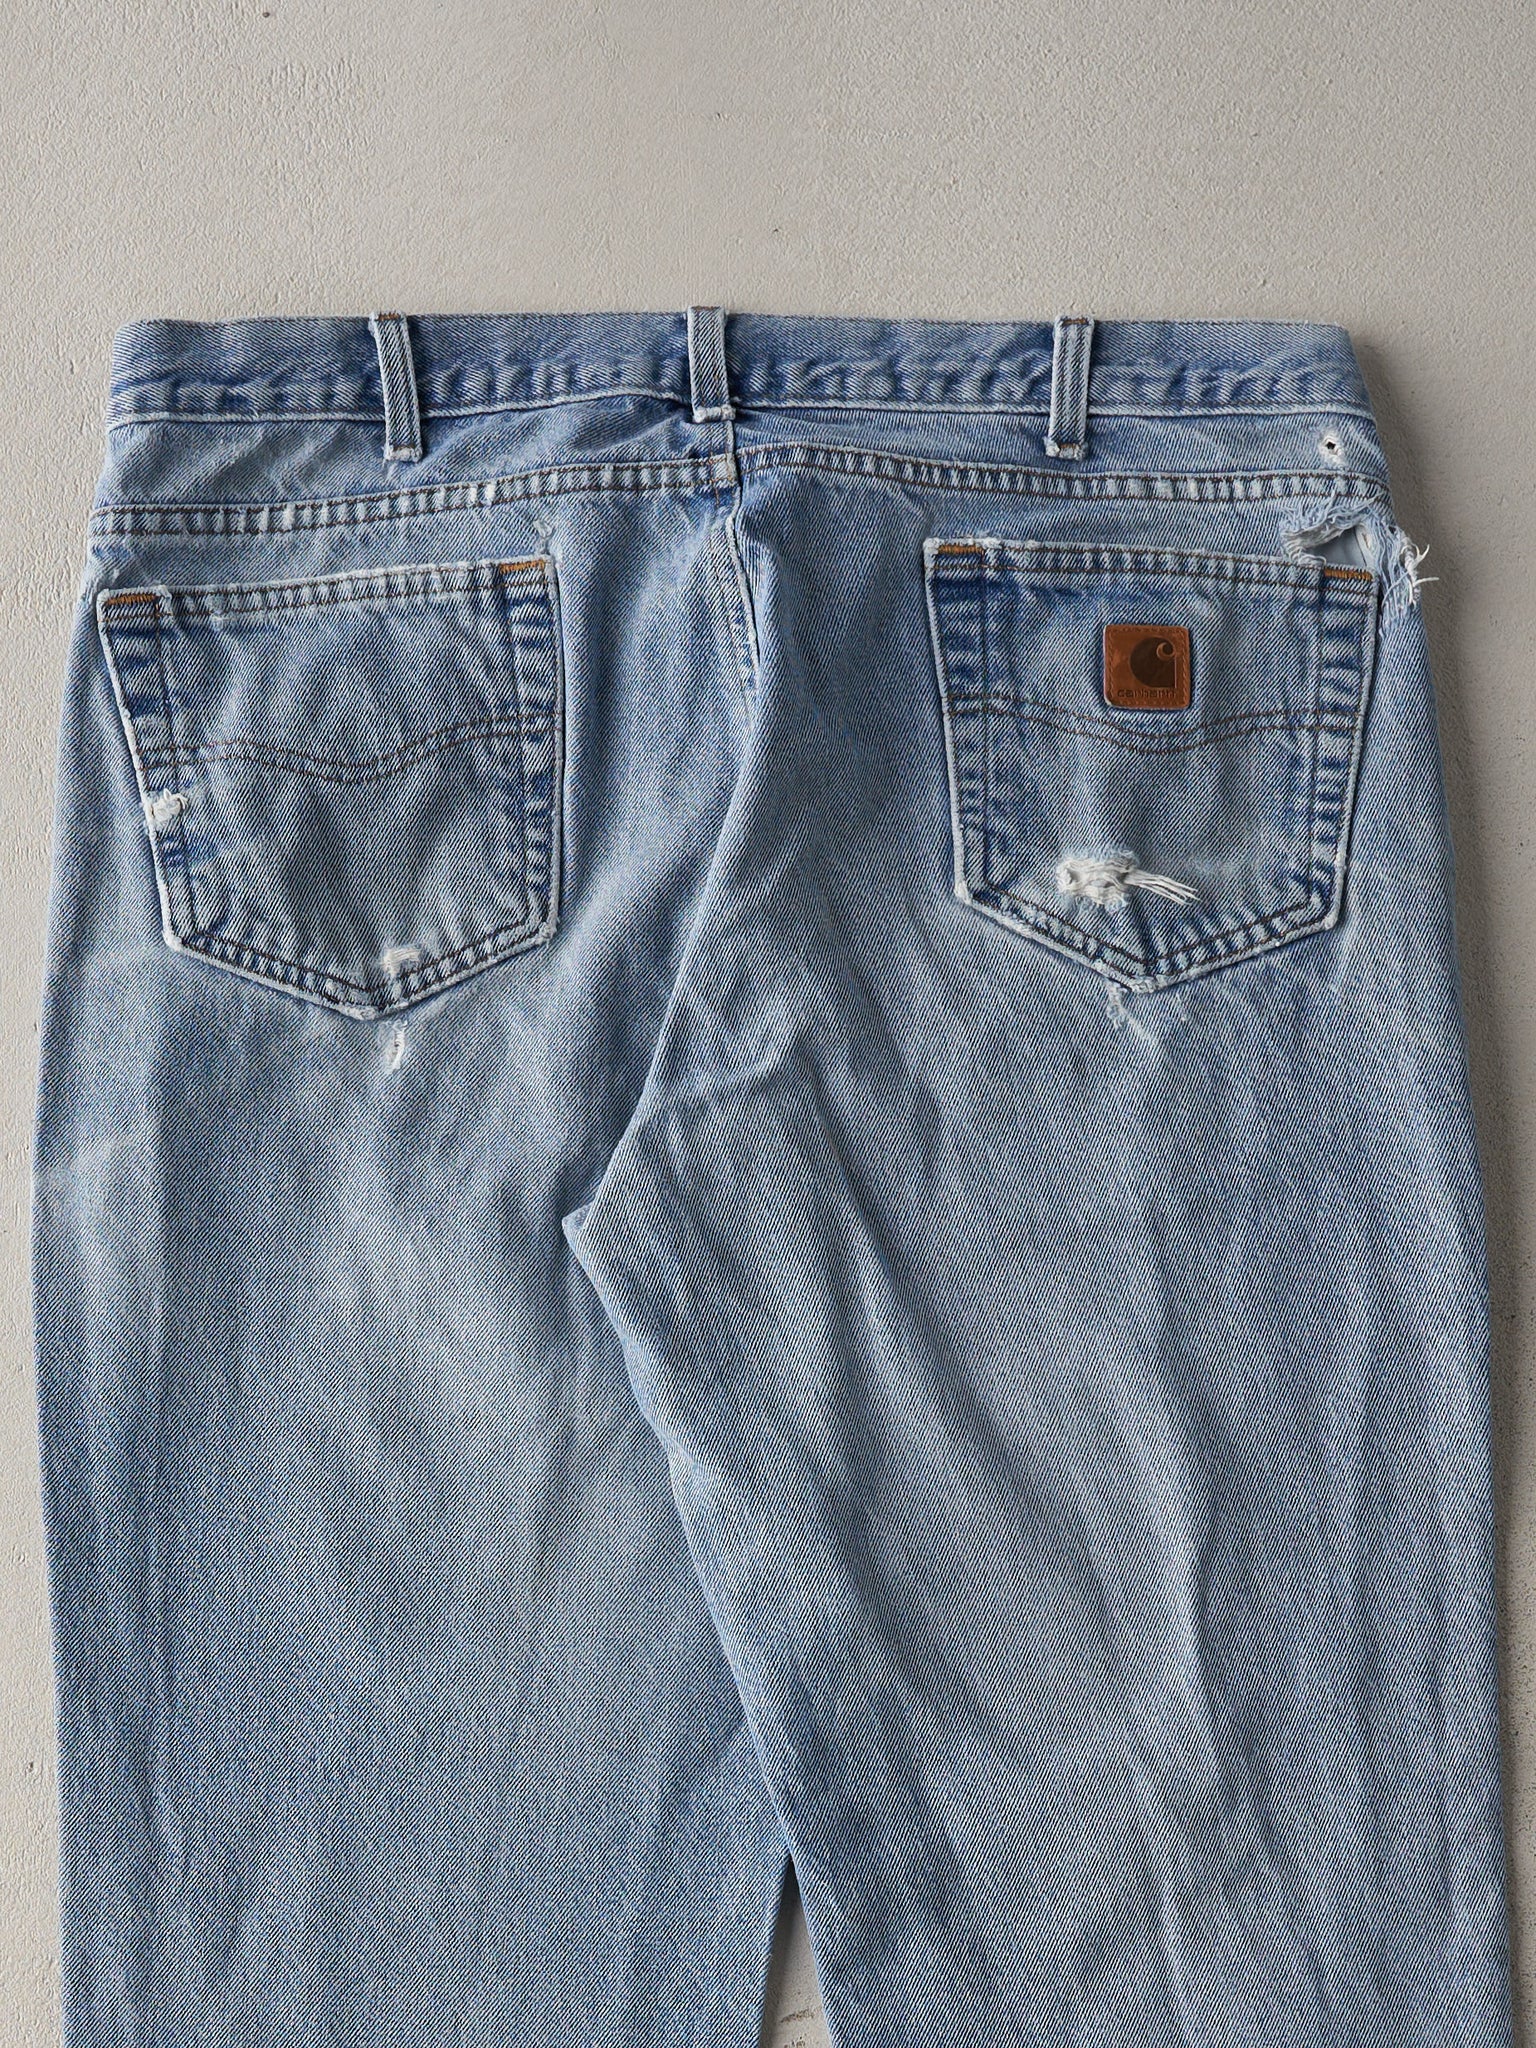 Vintage 90s Washed Blue Carhartt Denim Jeans (37x29)